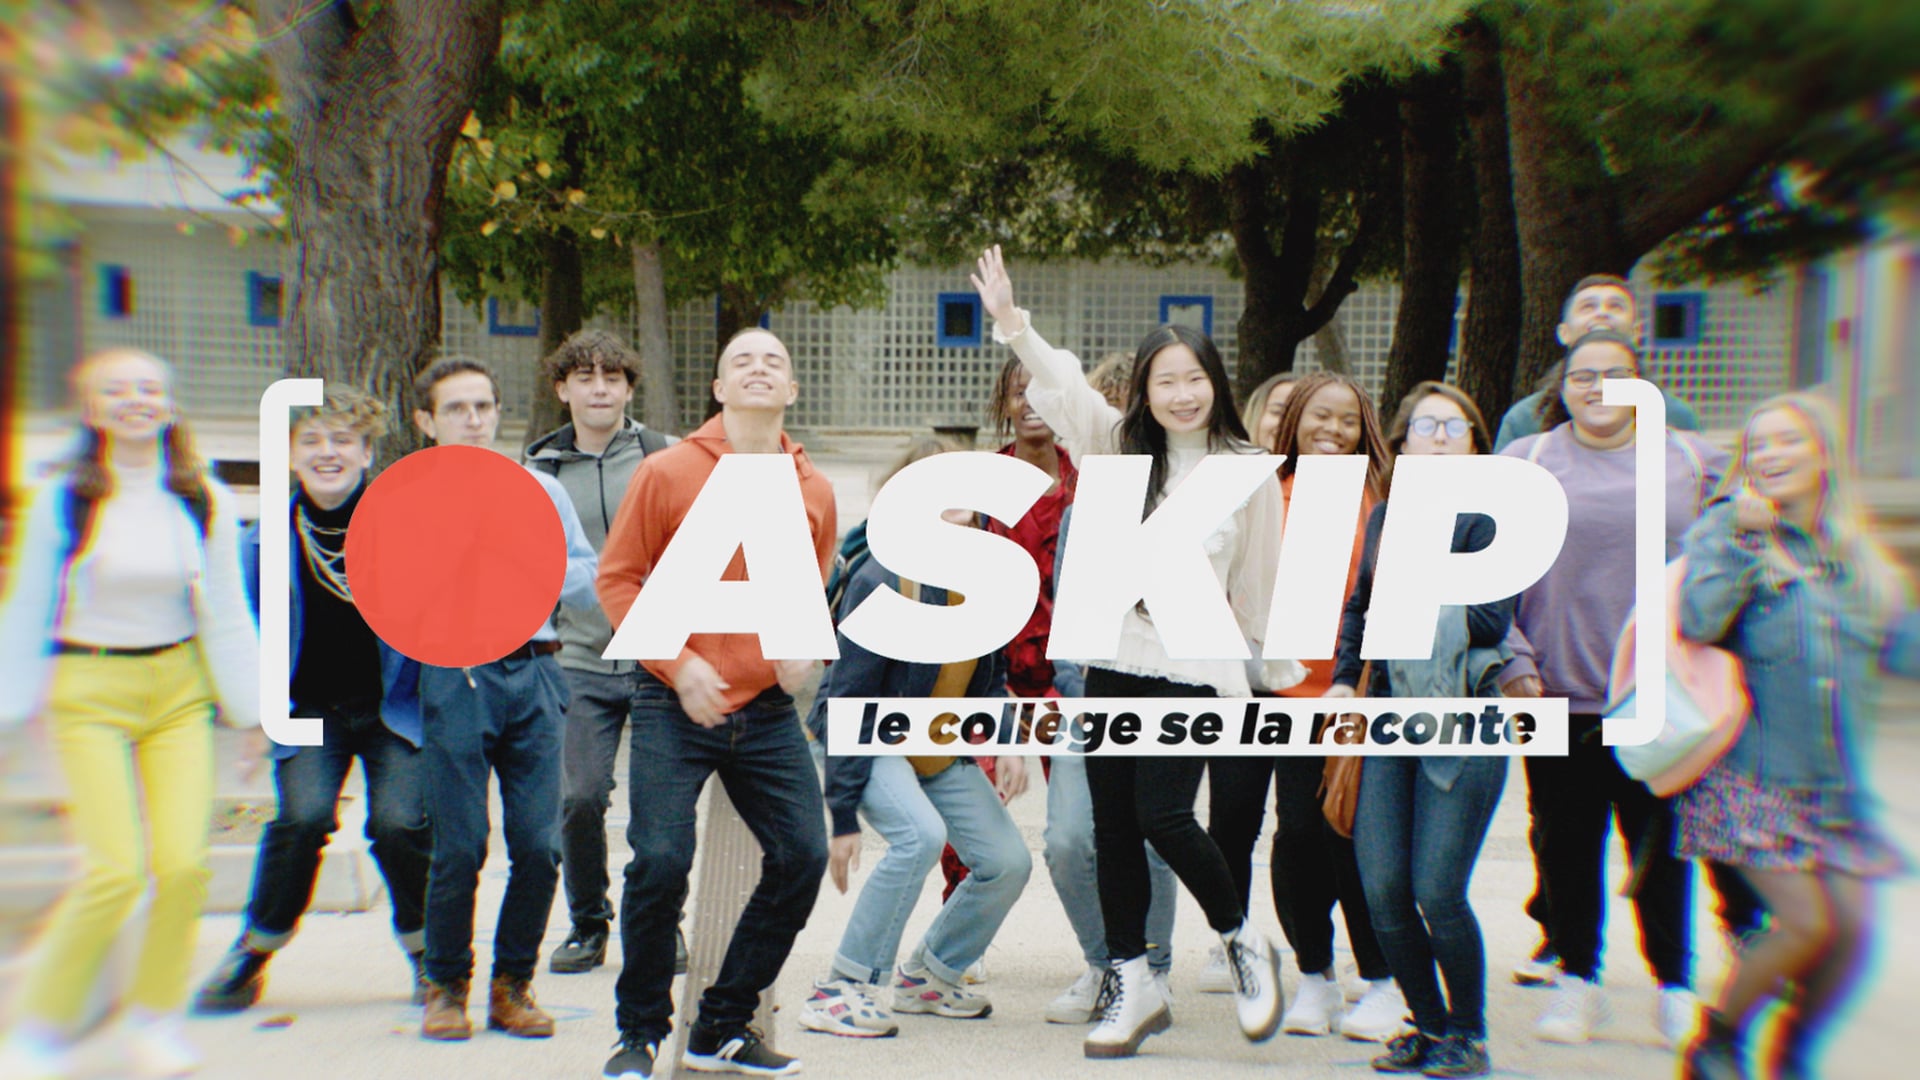 ASKIP, le collège se la raconte - Le jour de la réflexion raciste • Fiction 40x16' (Capa Drama / France 4)